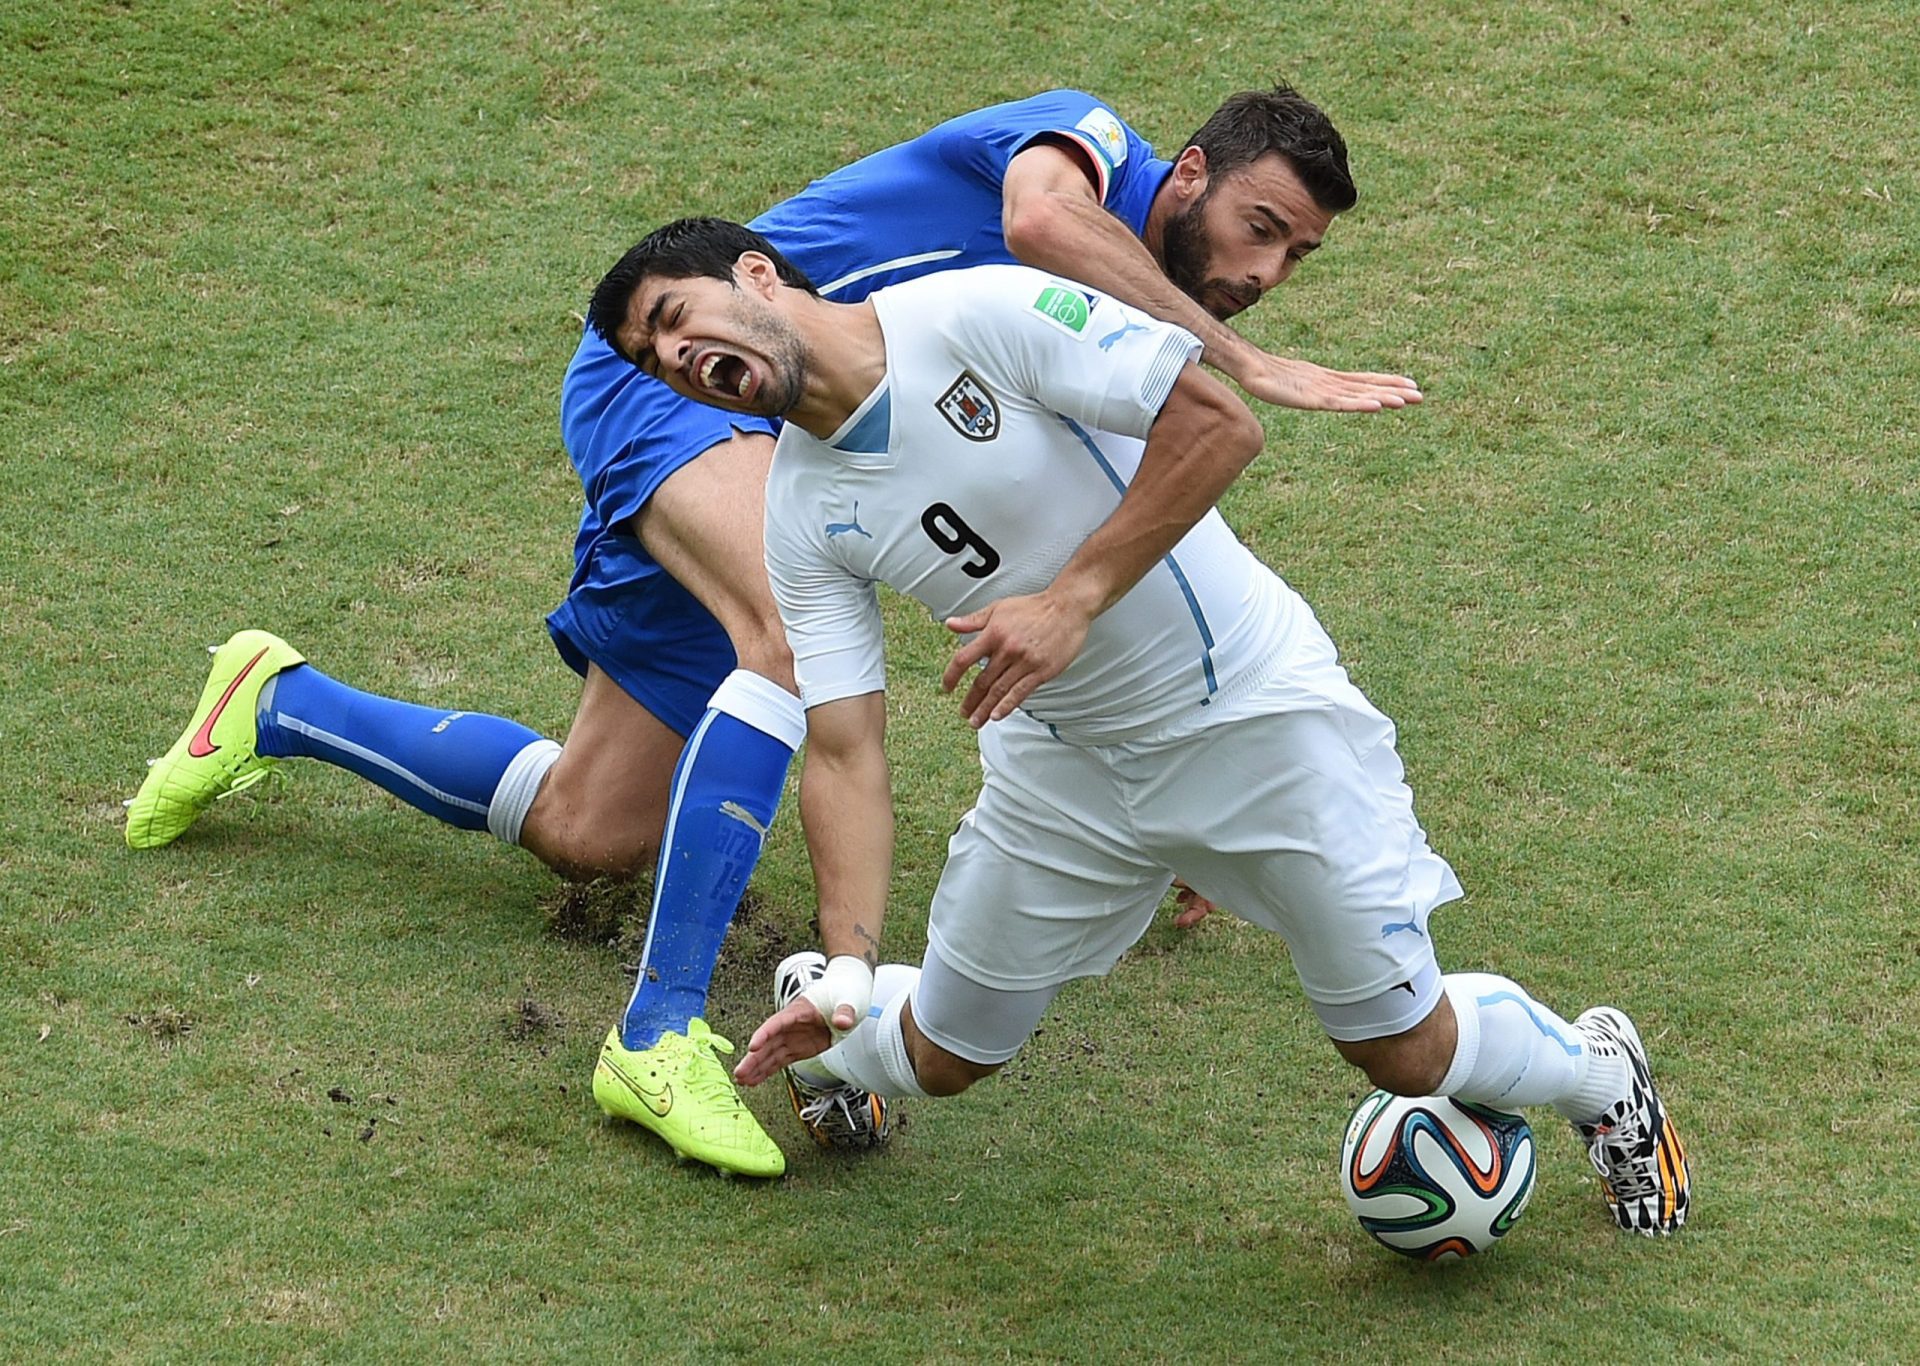 Fim dos jogos | Grupo B Itália-Uruguai (0-1) / C. Rica-Inglaterra (0-0)